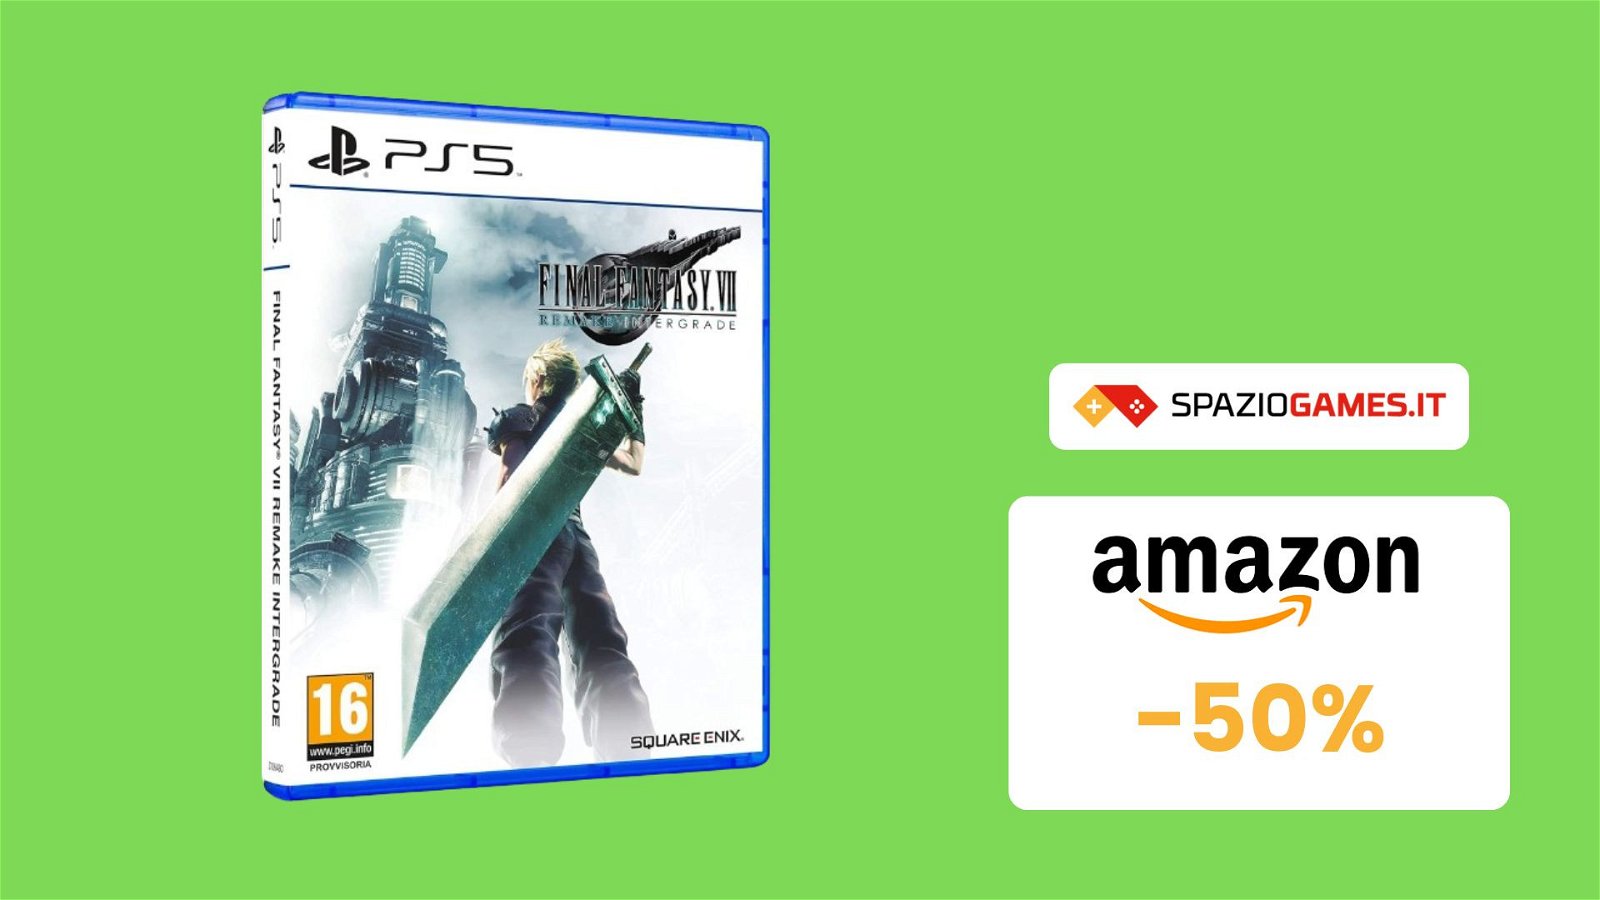 Final Fantasy VII Remake Intergrade per PS5 a prezzo SHOCK su Amazon! (-50%)